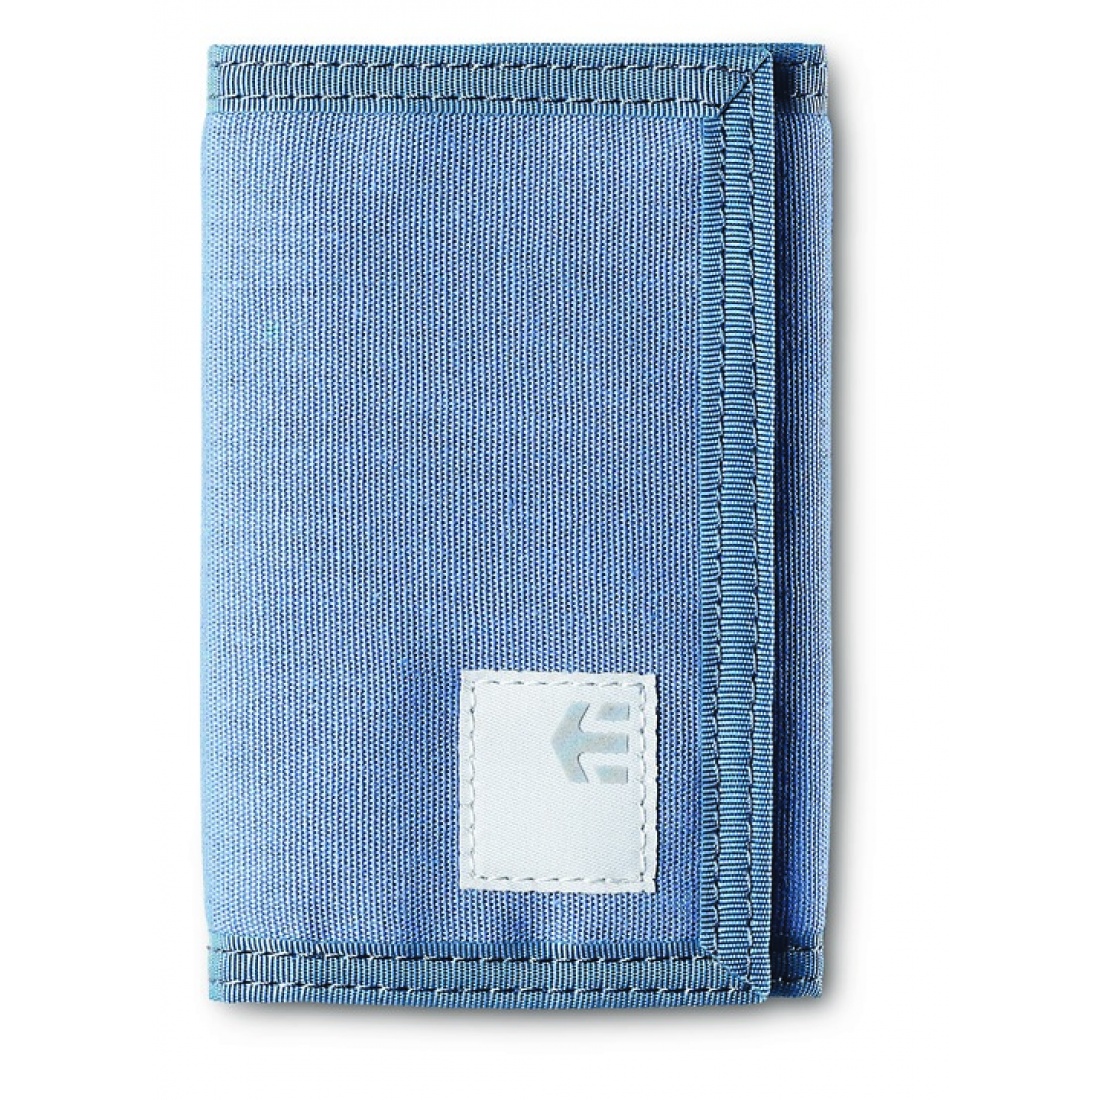 ETN-Breaker Wallet Pacific Blue 